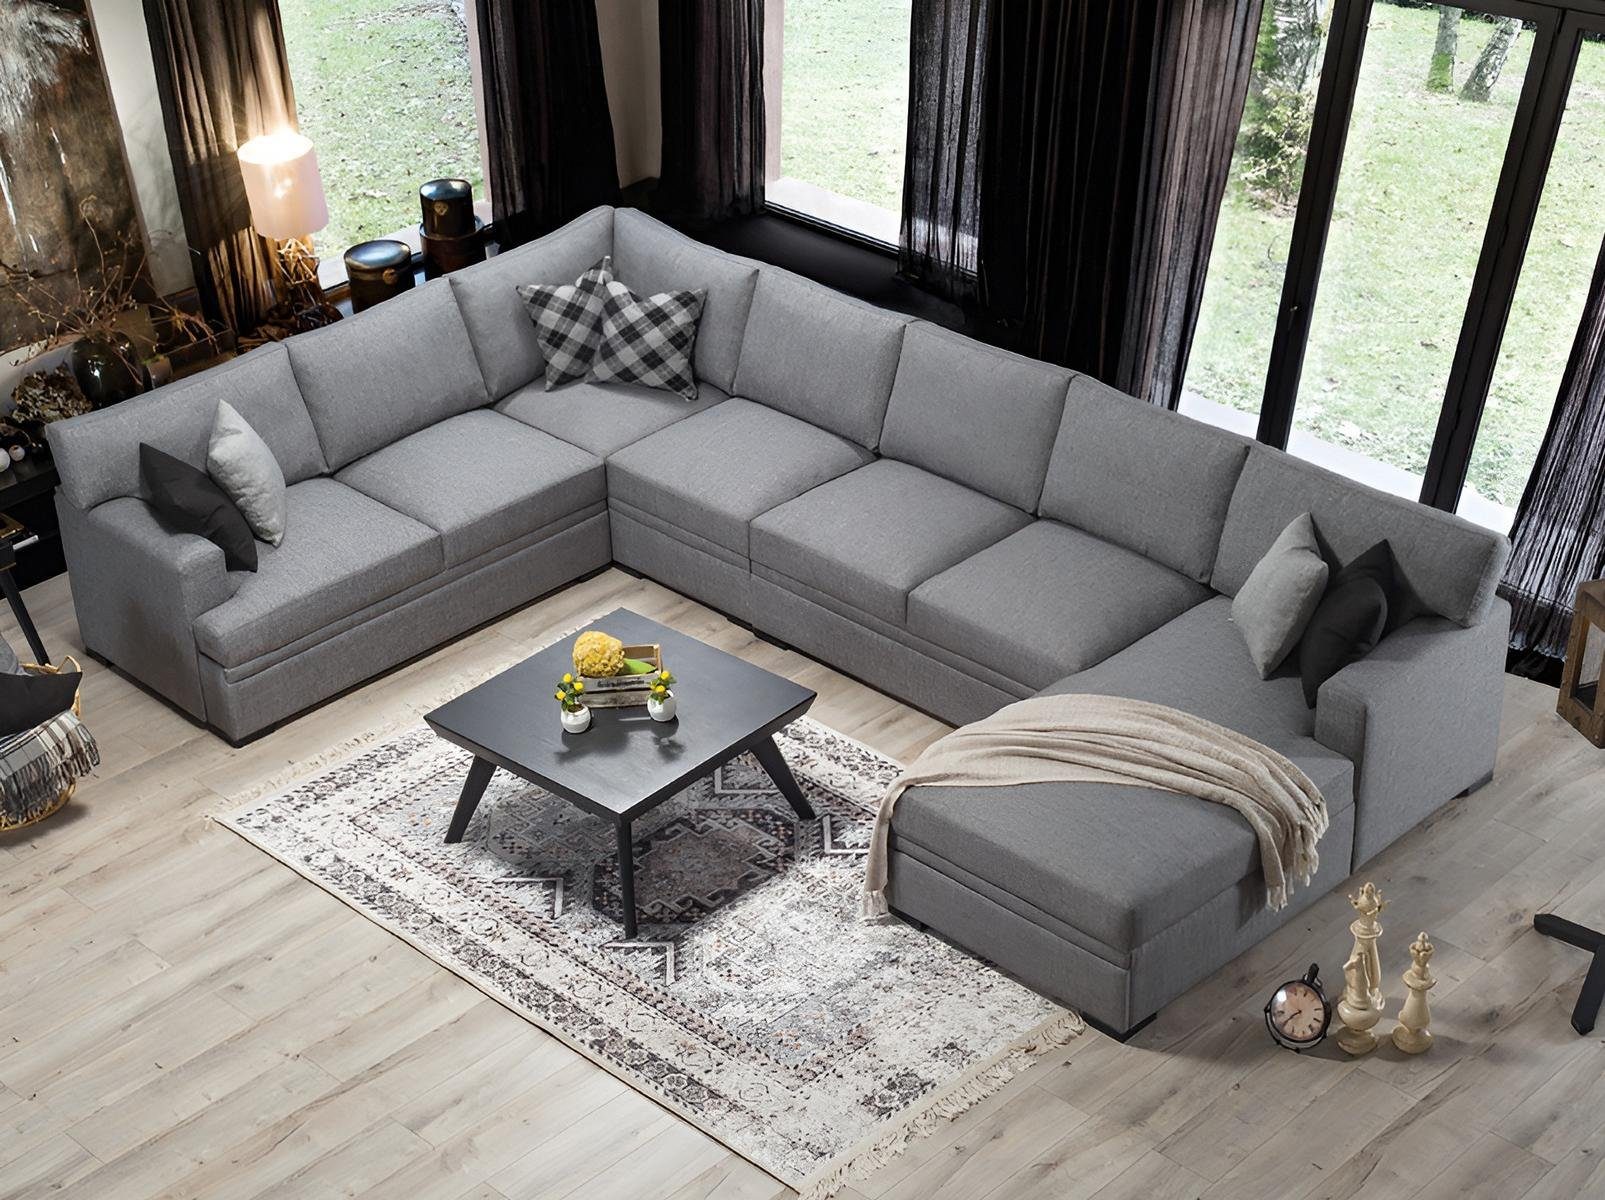 JVmoebel Ecksofa Modern Design Möbel Sofa U-Form Grau Wohnzimmer Einrichtung Neu, 1 Teile, Made in Europa Beige